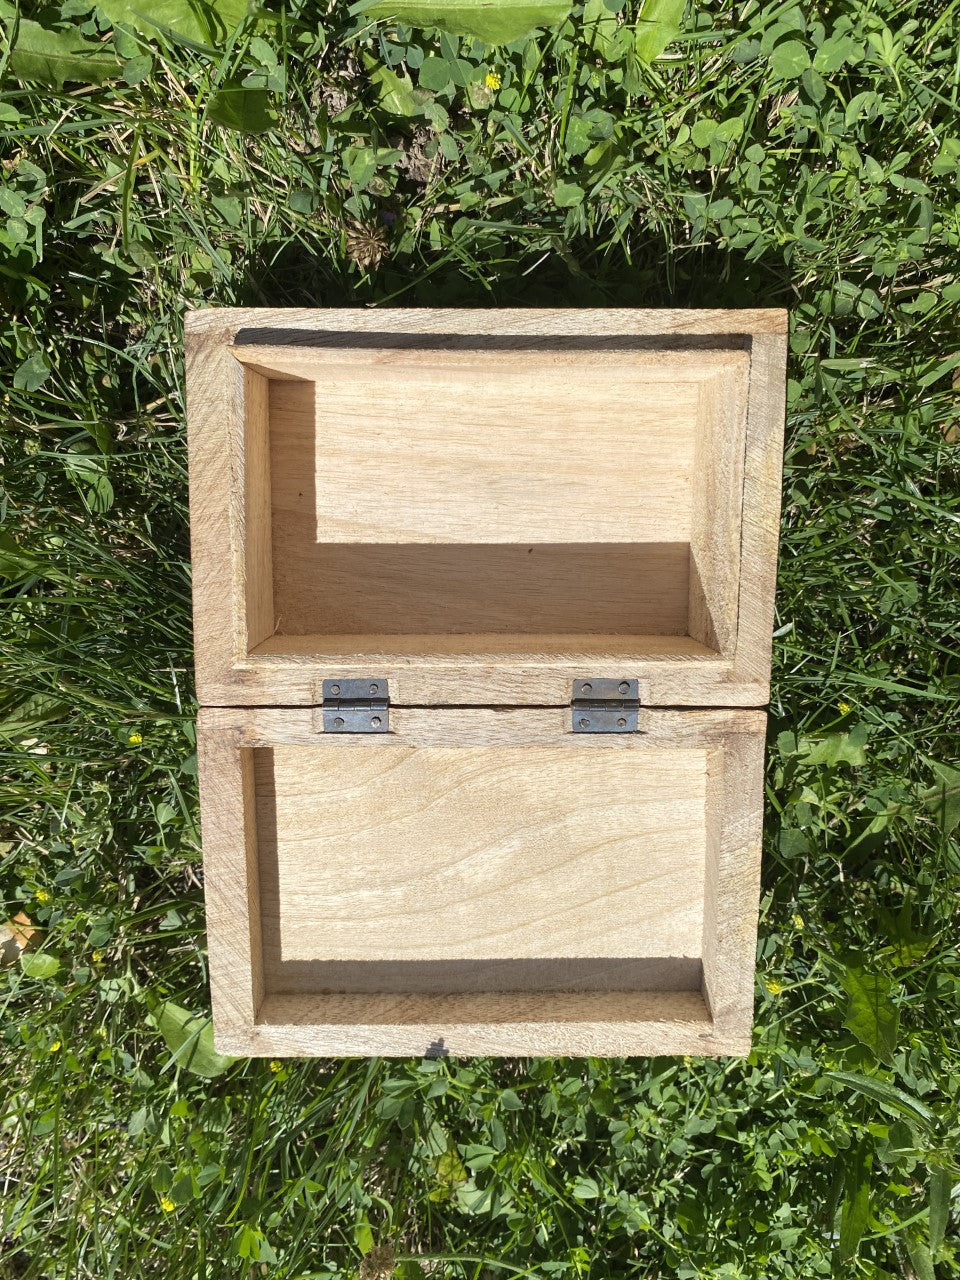 OM Wooden Box